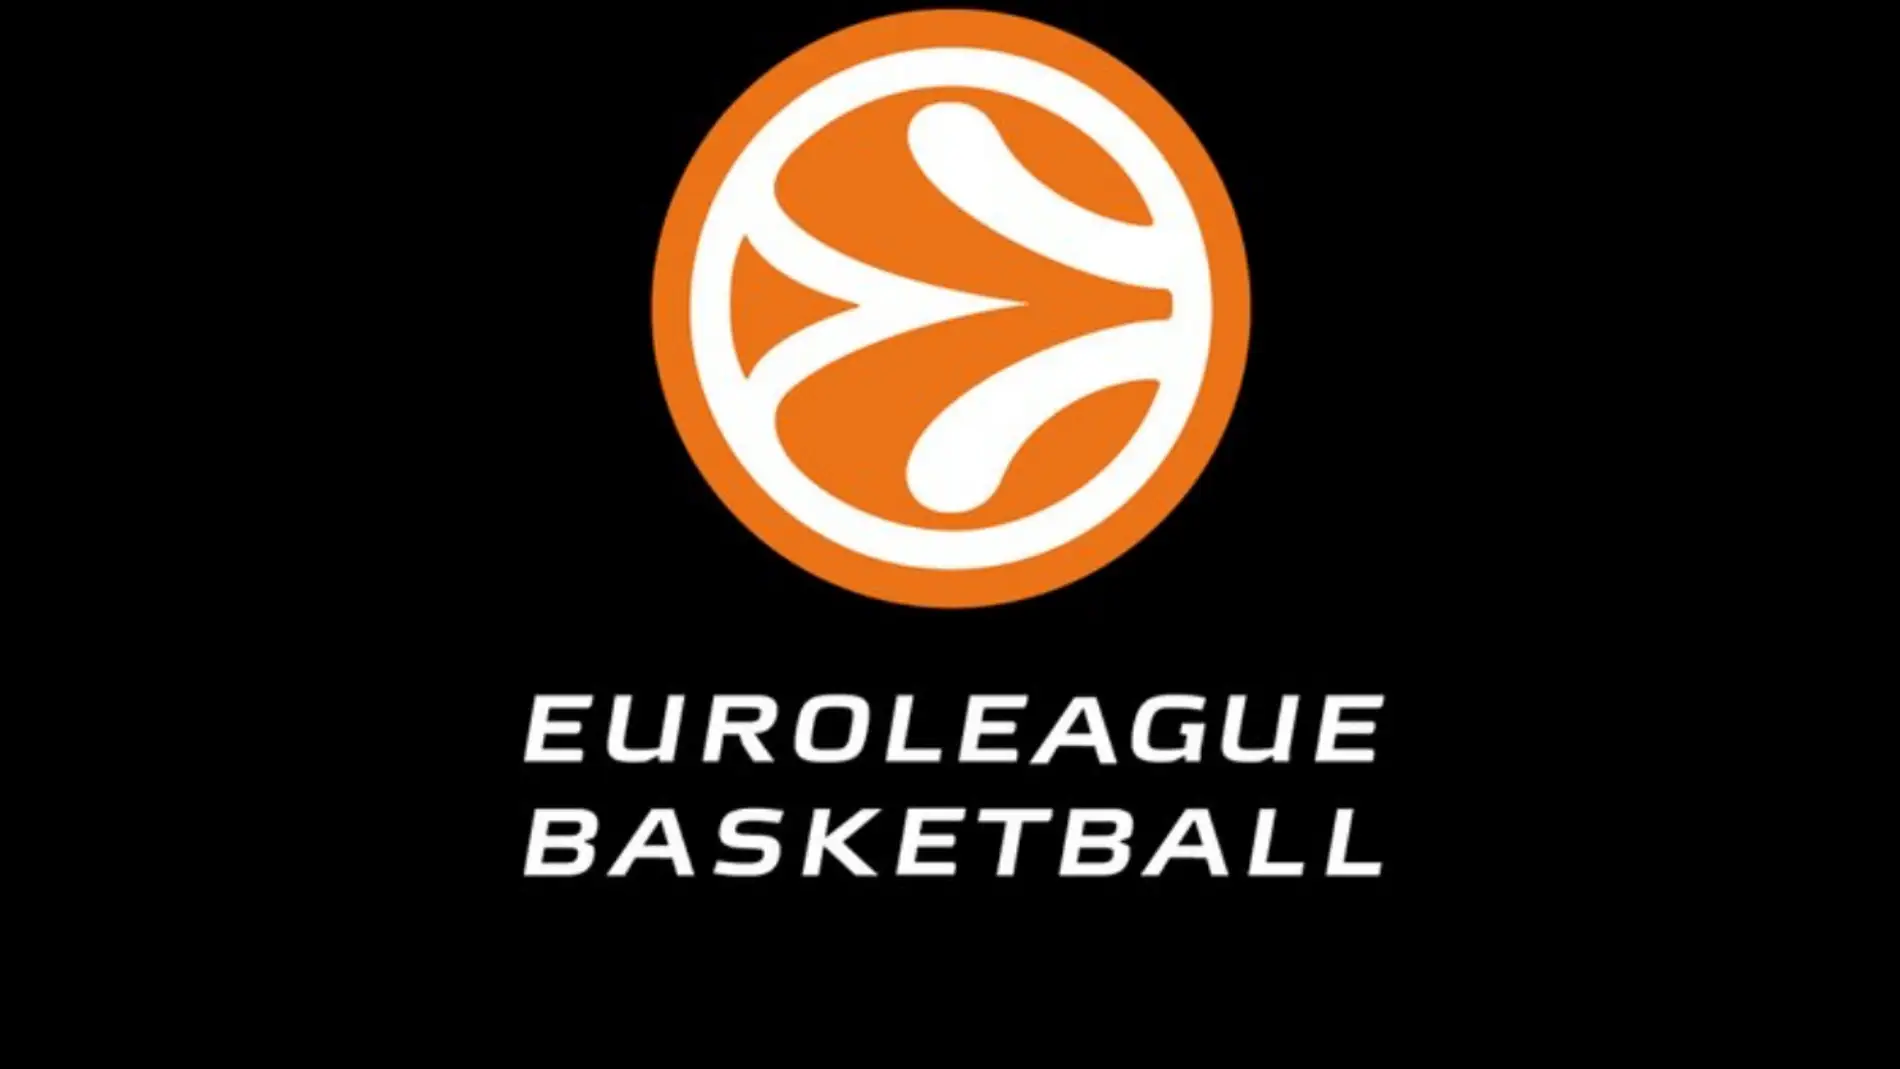 No puedo aventuras Tío o señor Valencia Basket jugará la próxima edición de la Euroliga | Onda Cero Radio